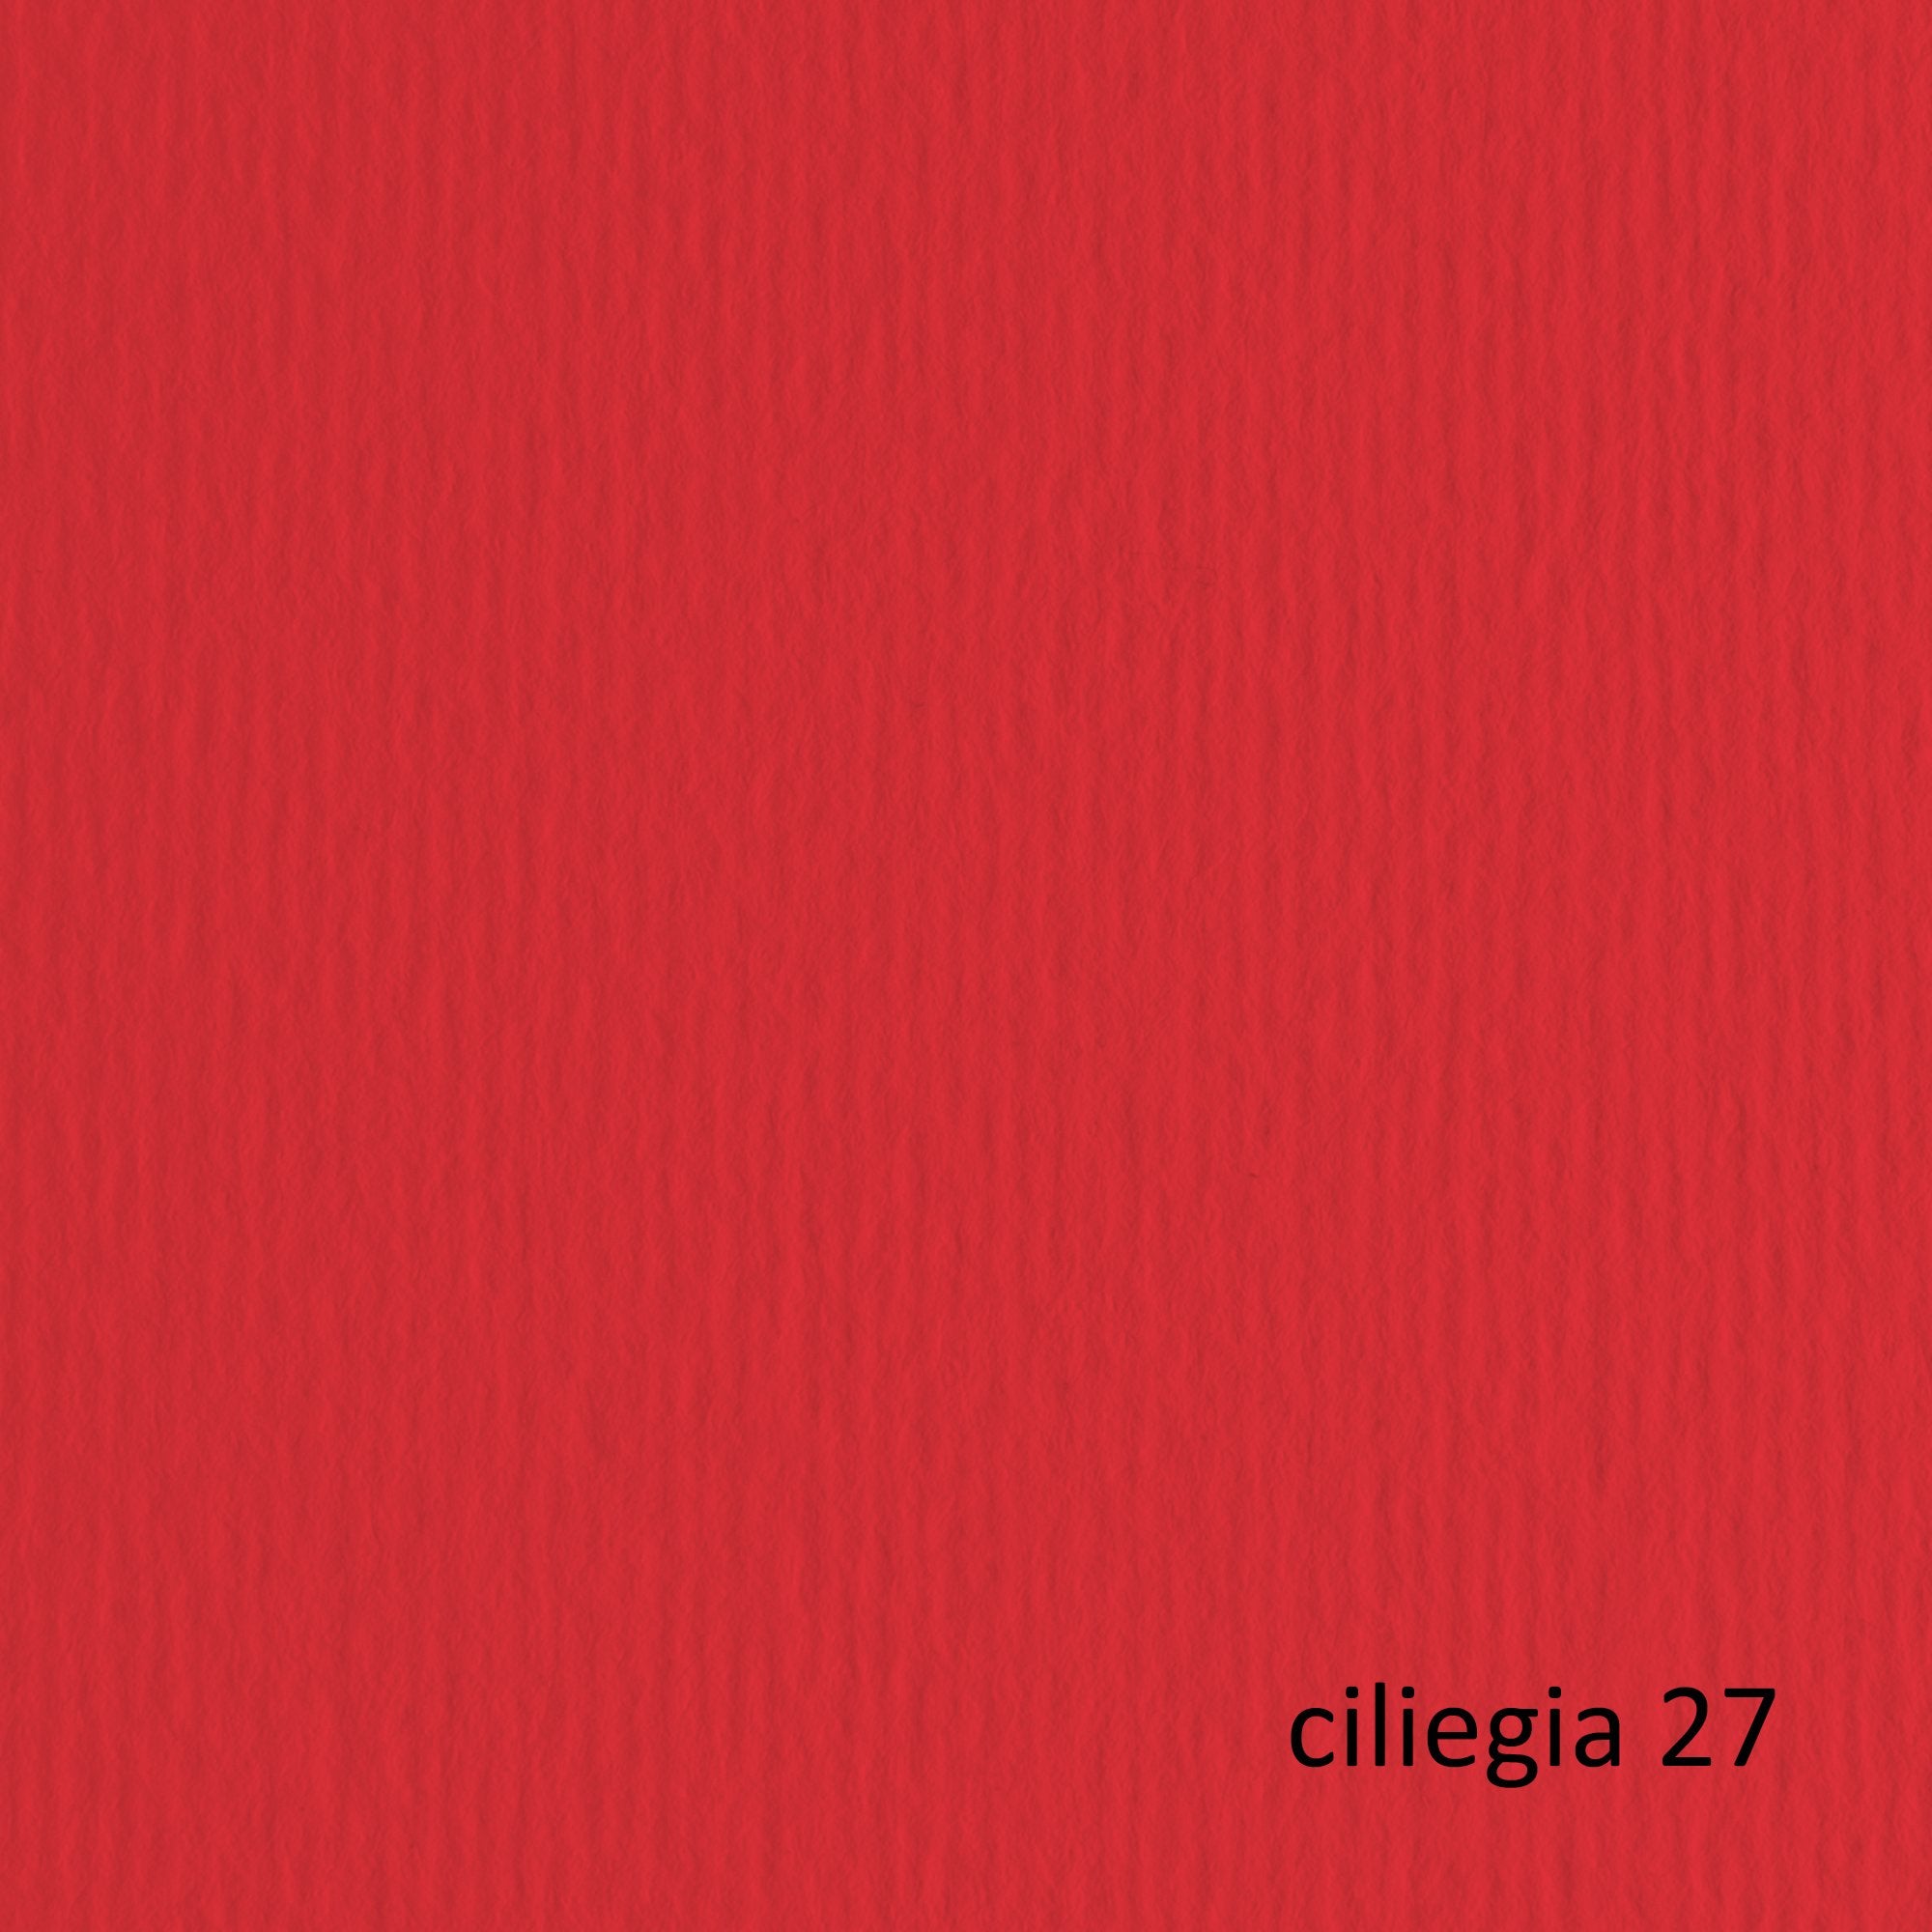 fabriano-blister-20fg-cartoncino-50x70-220gr-ciliegia-27-elle-erre